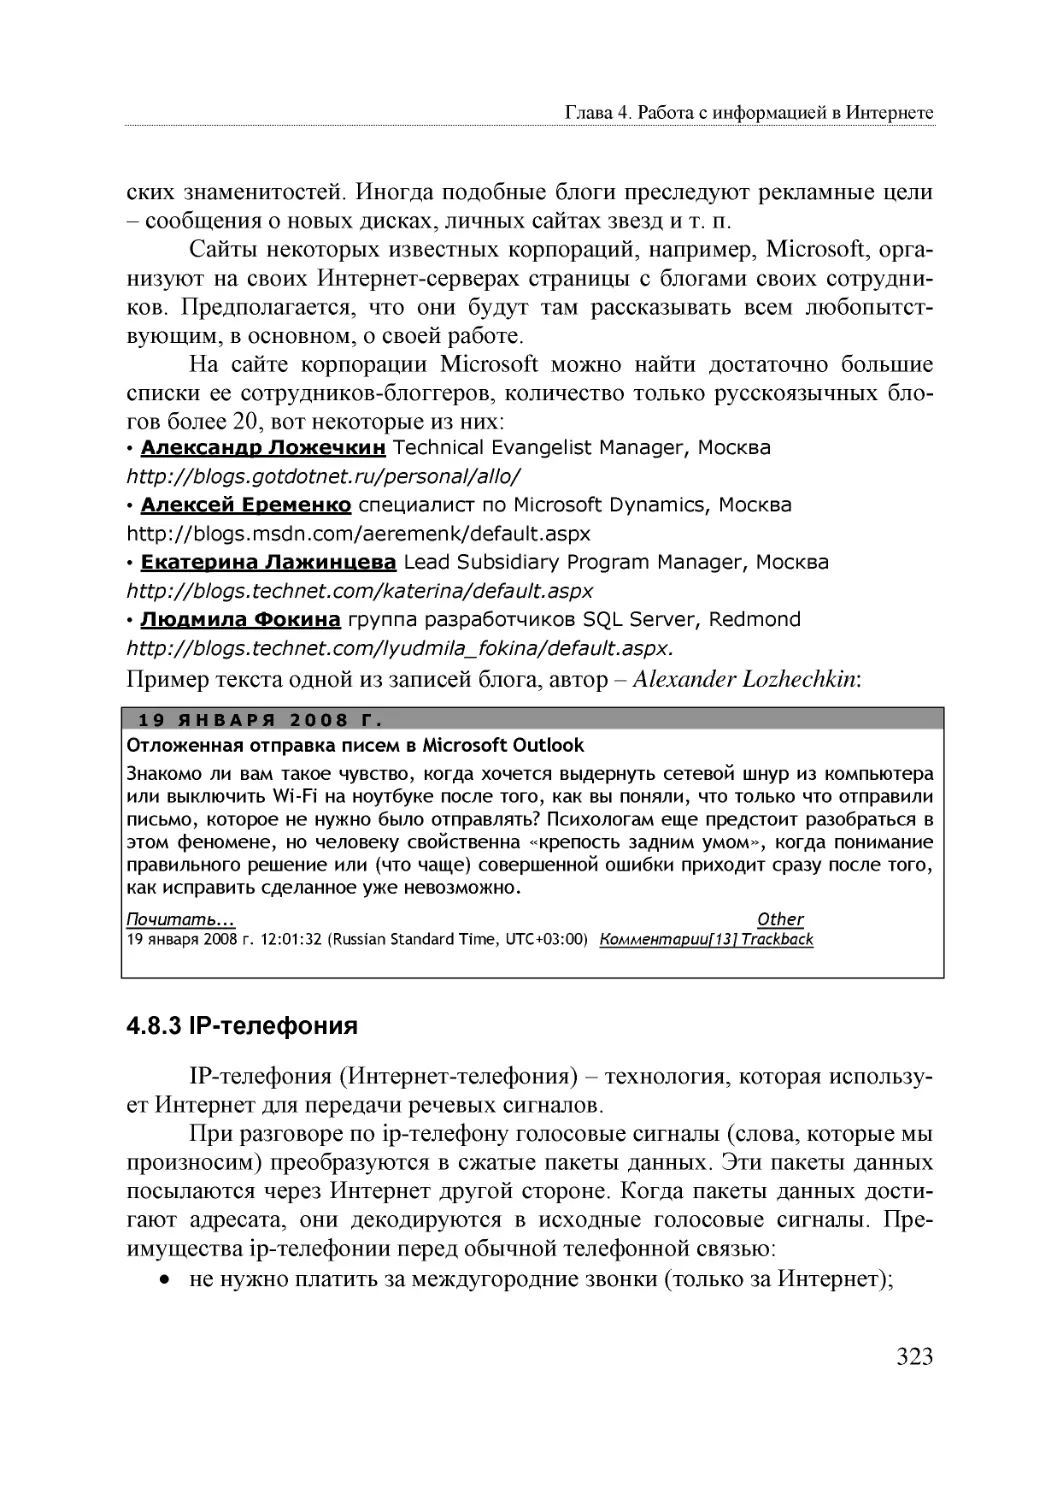 Informatika_Uchebnik_dlya_vuzov_2010 323